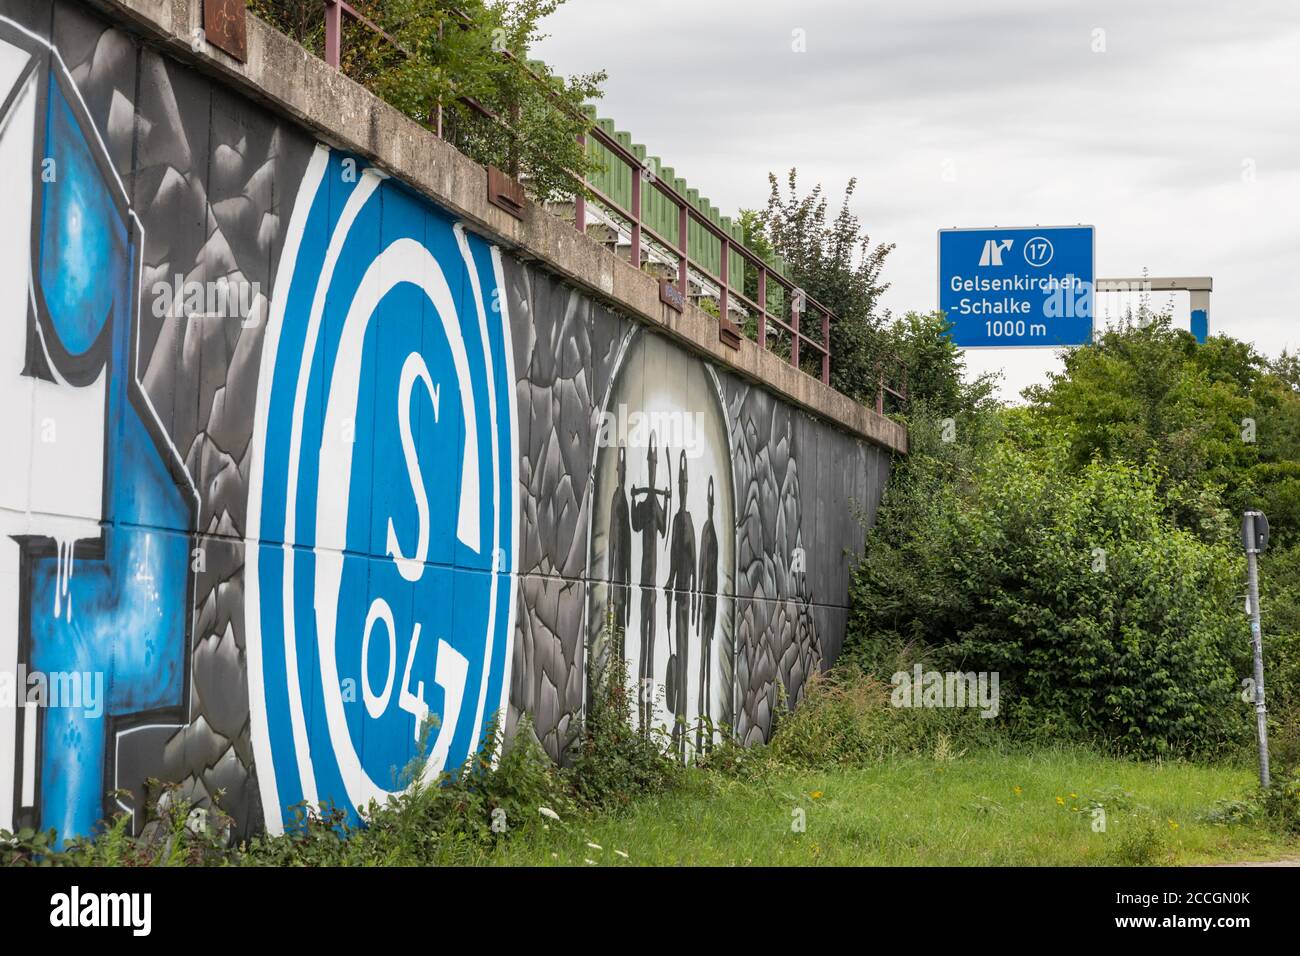 Schalke Fan Graffiti und Autobahnausfahrt, Schalker Meile Fanbereich des FC Schalke 04 Fußballverein, in Gelsenkirchen, Nordrhein-Westfalen, Deutschland Stockfoto